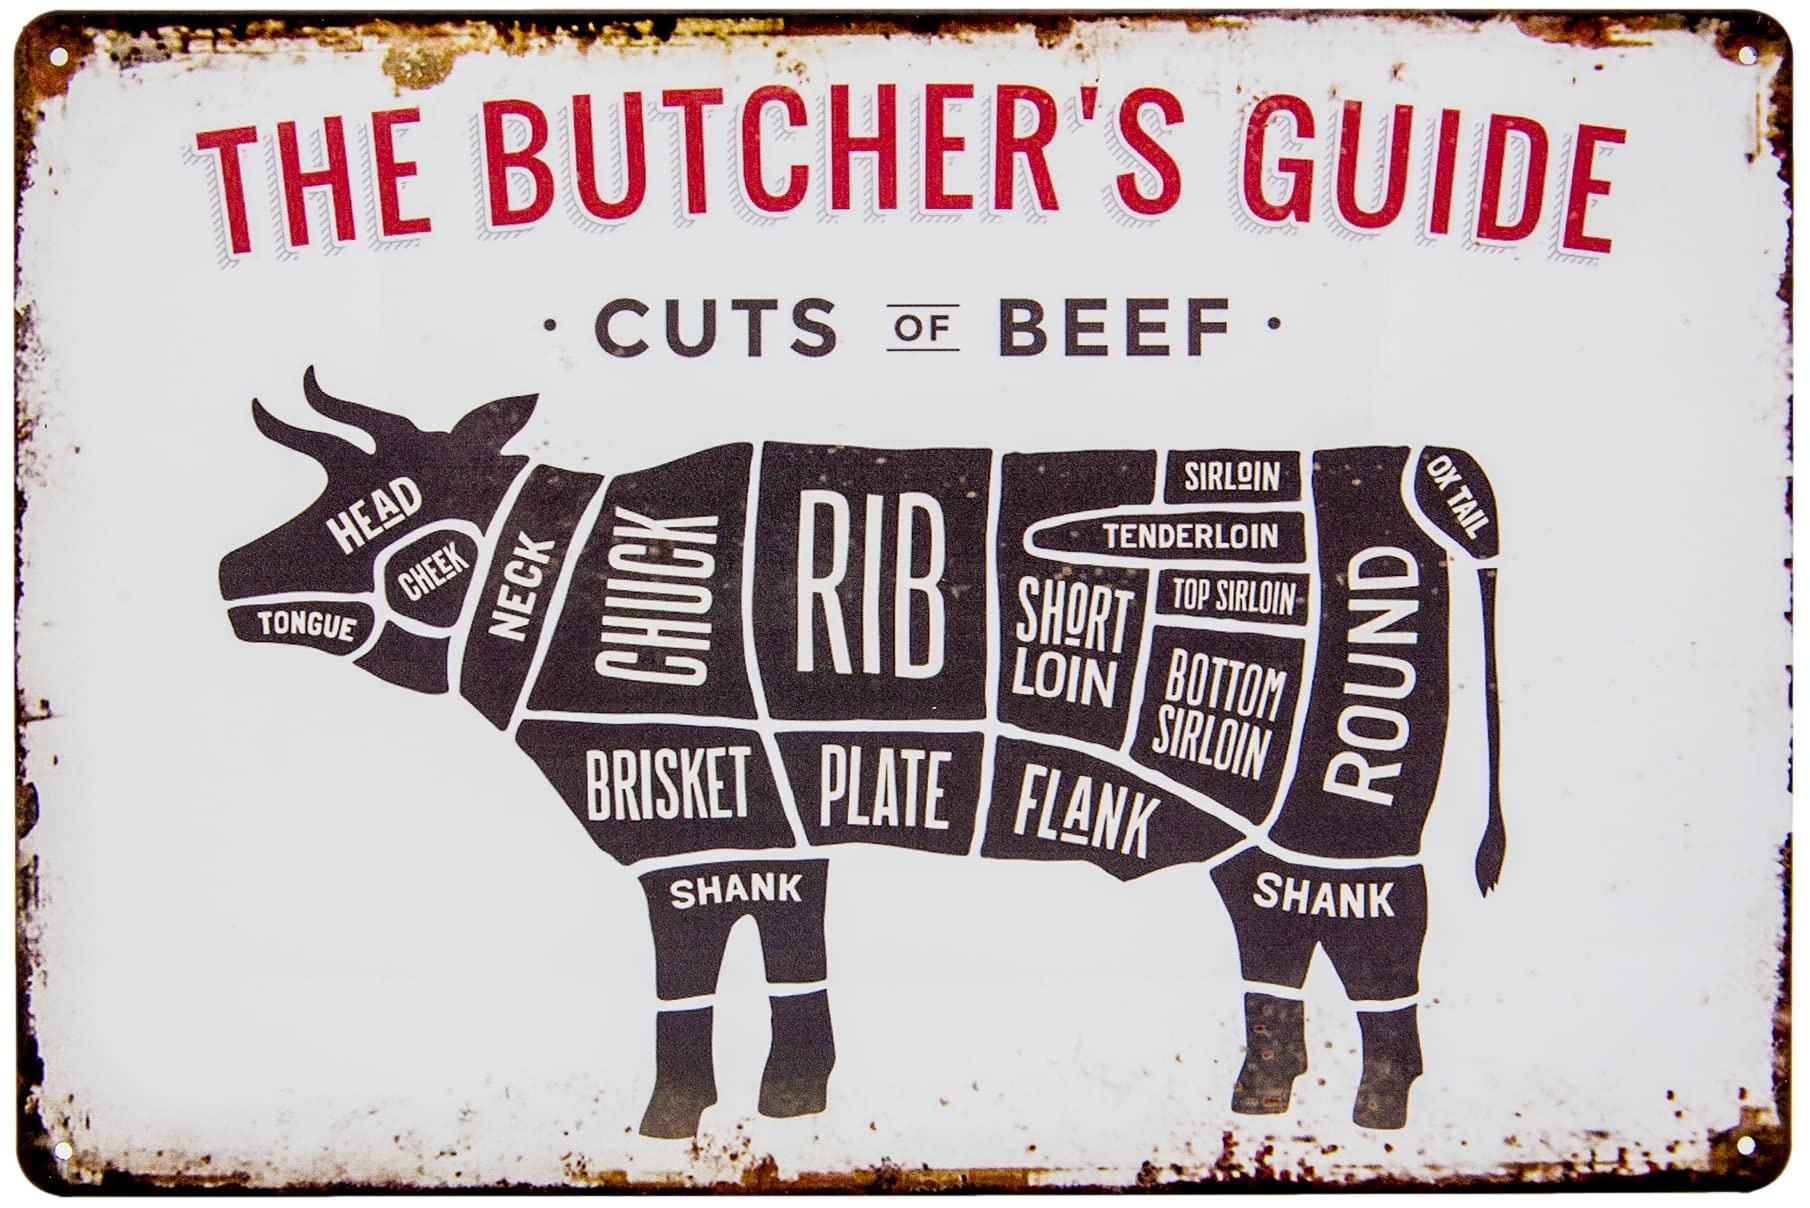 30 x 20 cm - Retro Blechschild für Grill und Koch Fans - "The Butchers Guide - Cuts of Beef" - Metzger, Fleischer BBQ Übersicht